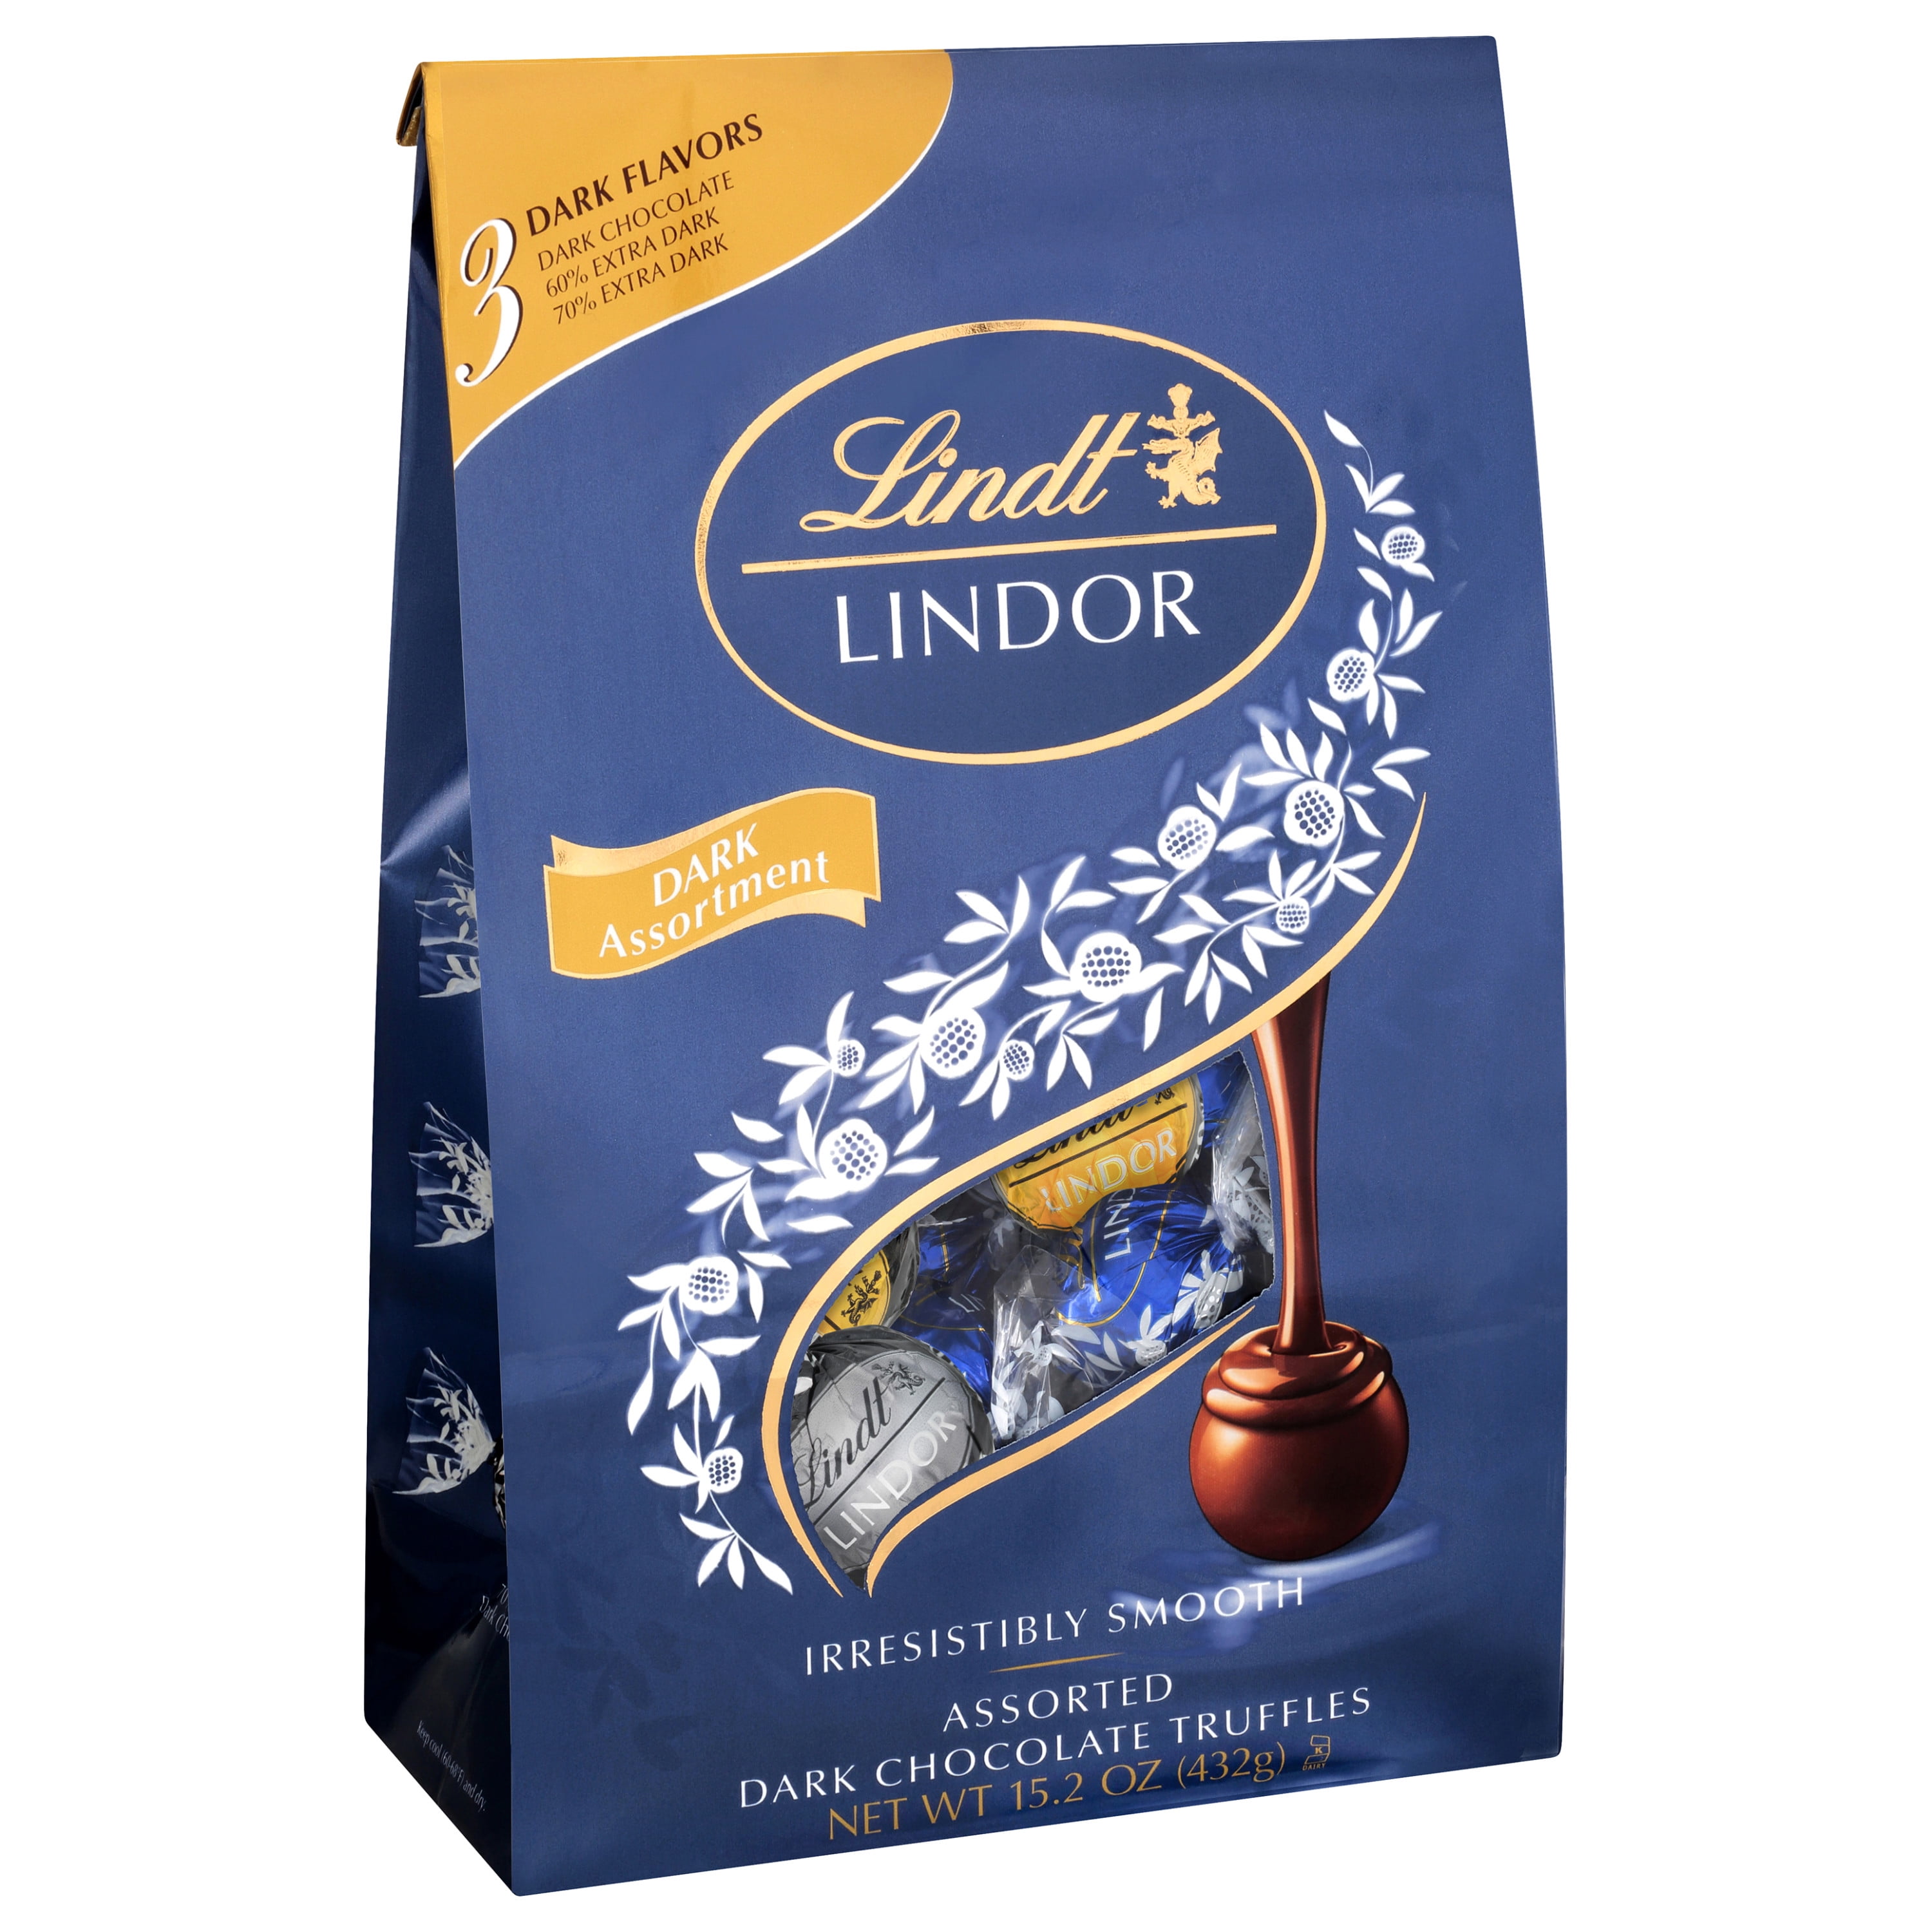 Lindt Lindor Dark Assorted Chocolate Truffles, 15.2 oz